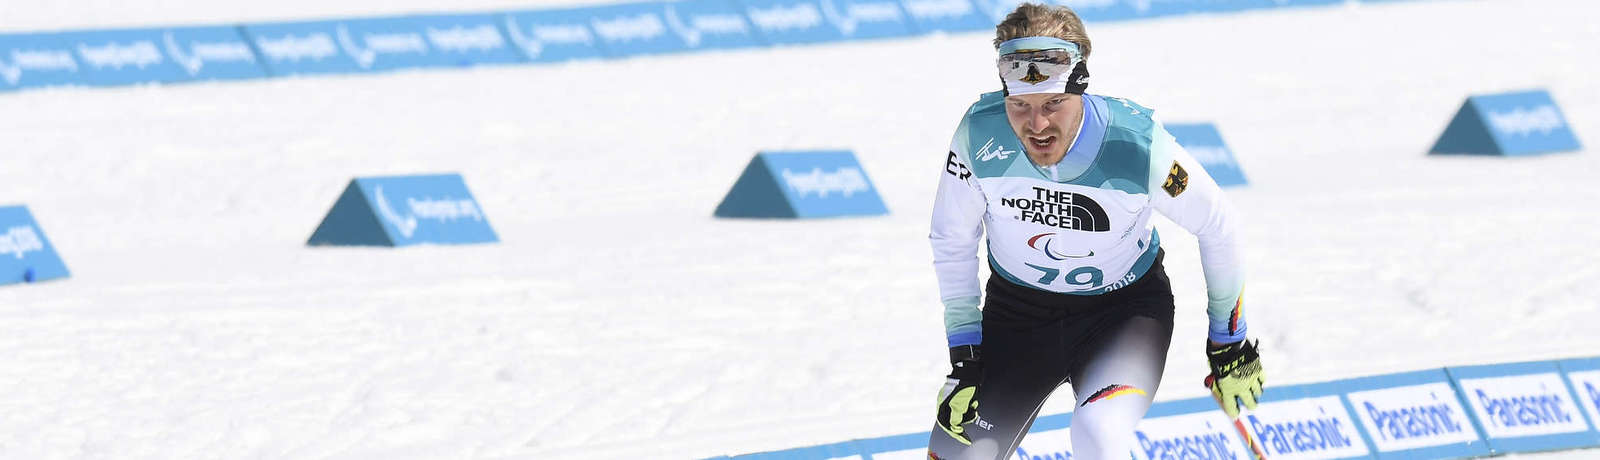 Steffen Lehmker beim Ski-Langlauf